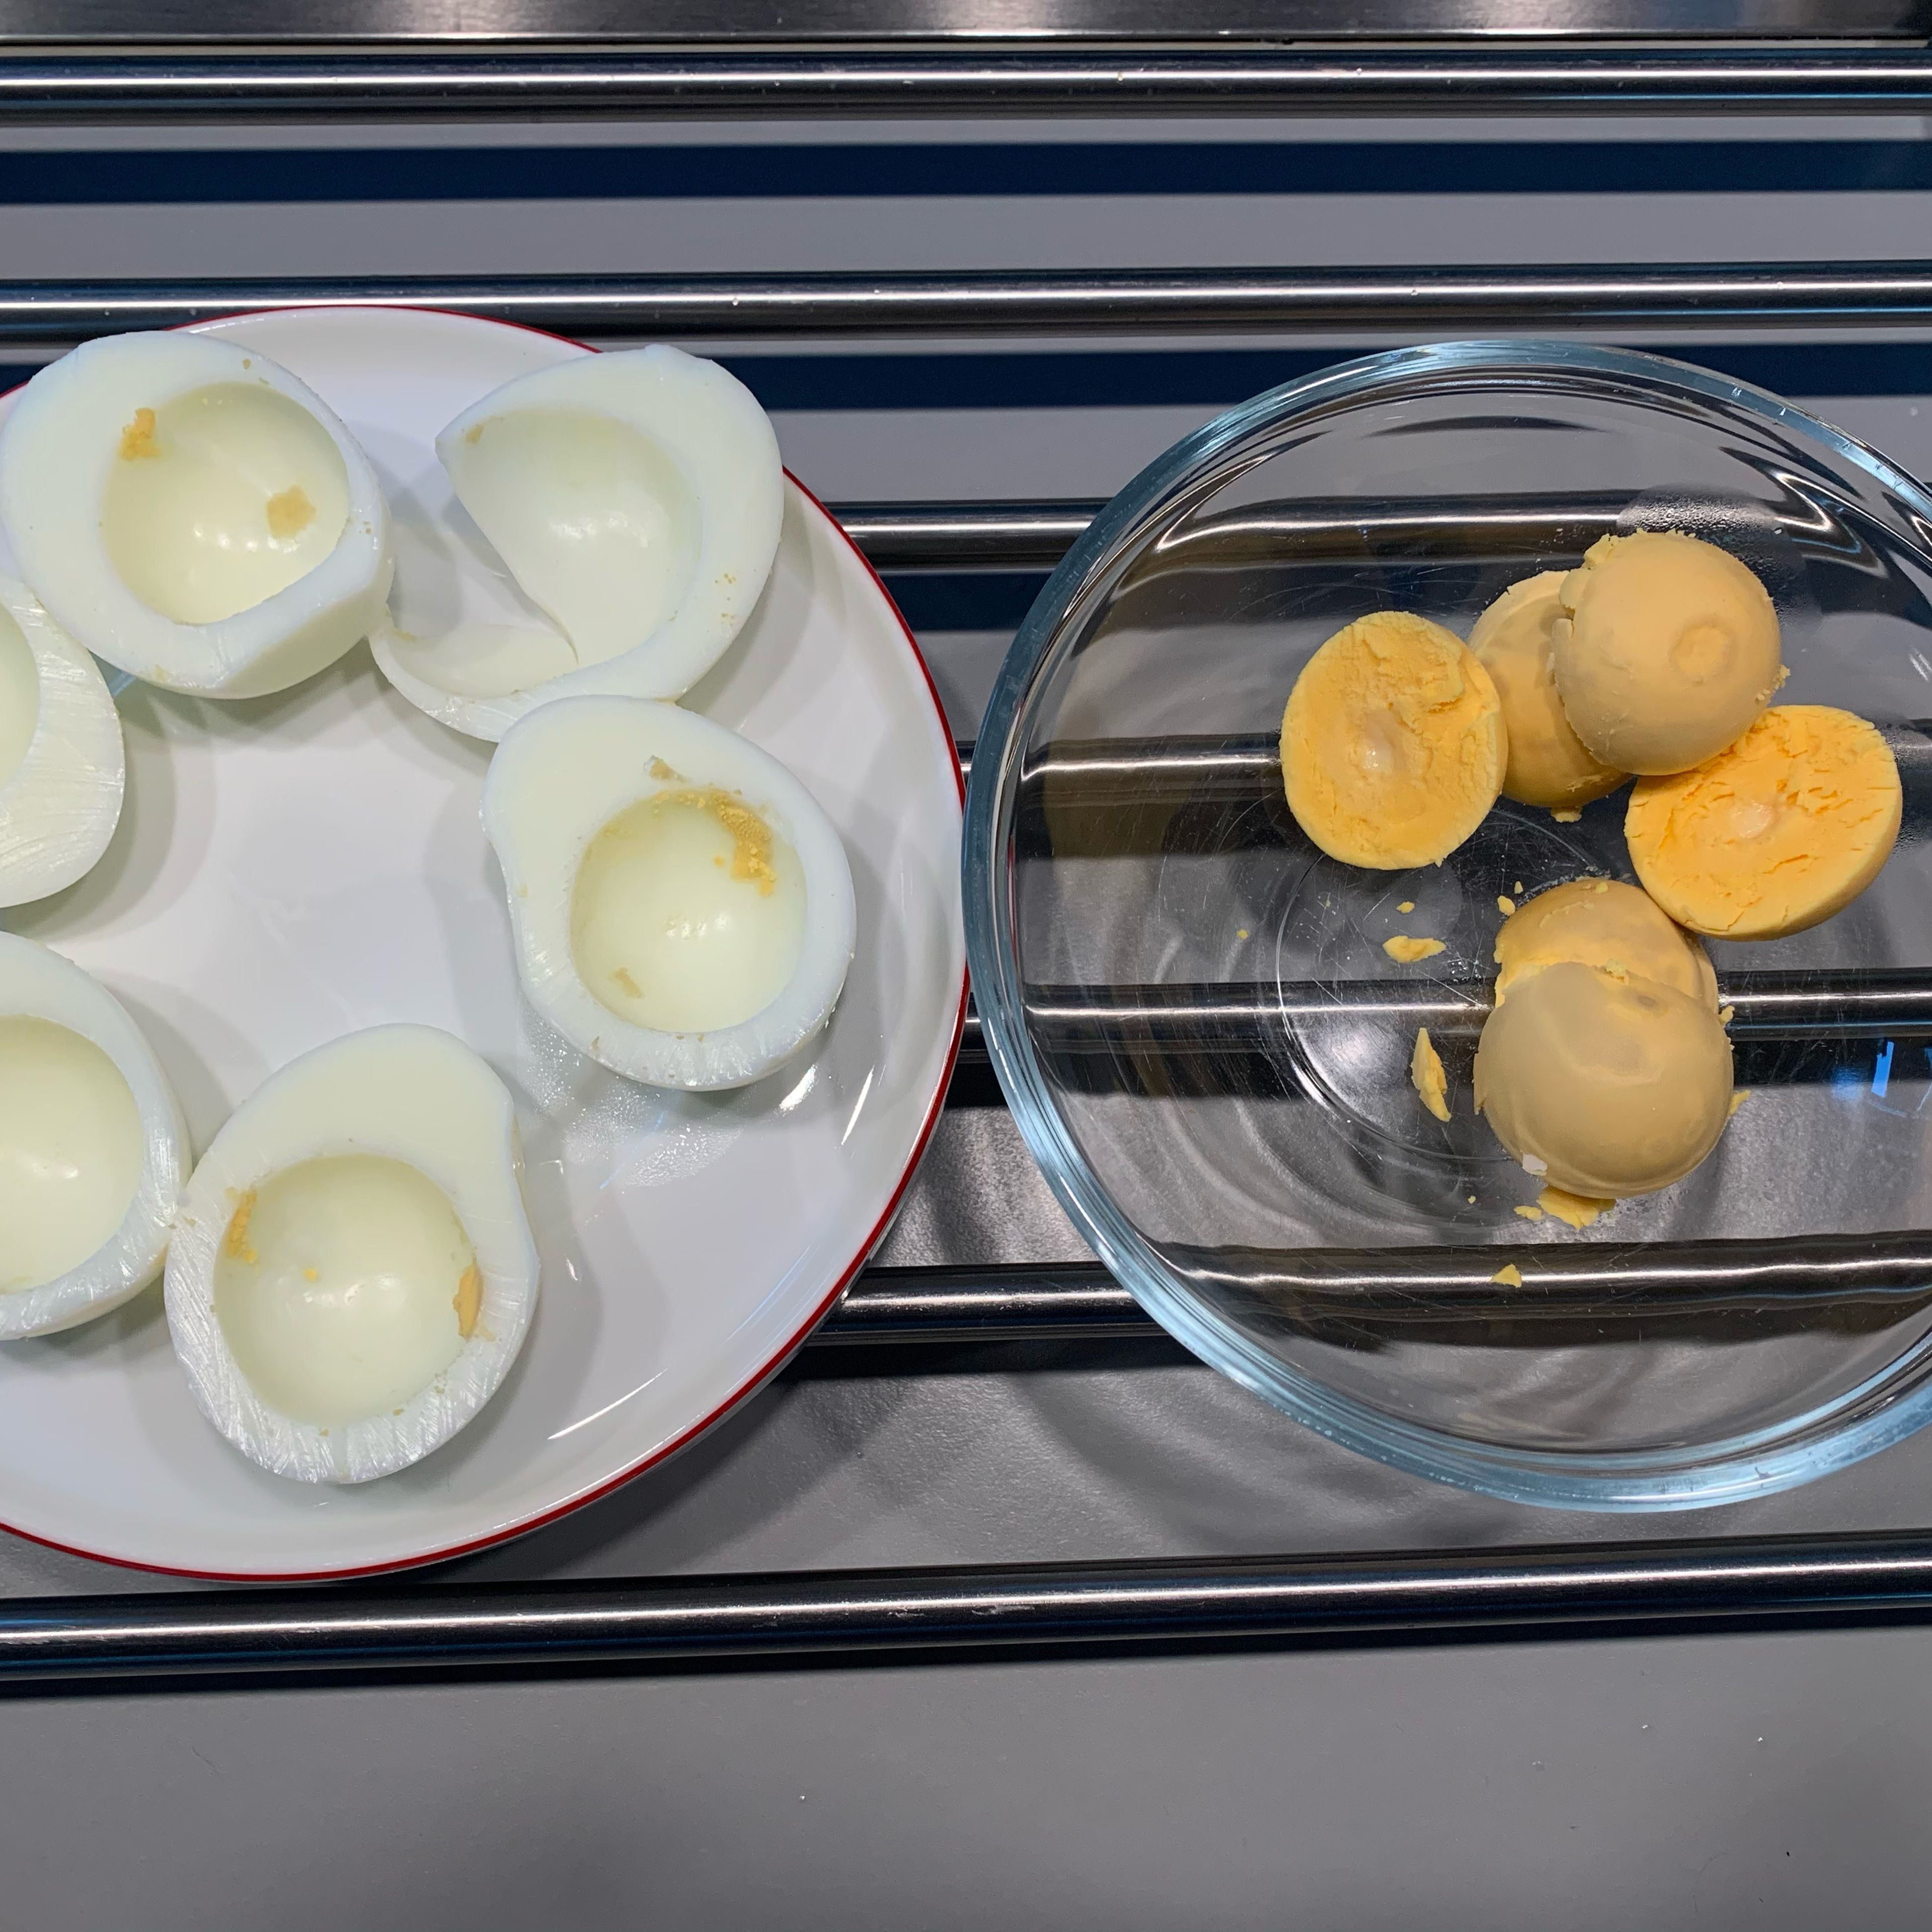 Die Eier 12 Minuten kochen, mit kaltem Wasser abschrecken, pellen￼, halbieren, das Eigelb in eine kleine Schüssel geben.￼